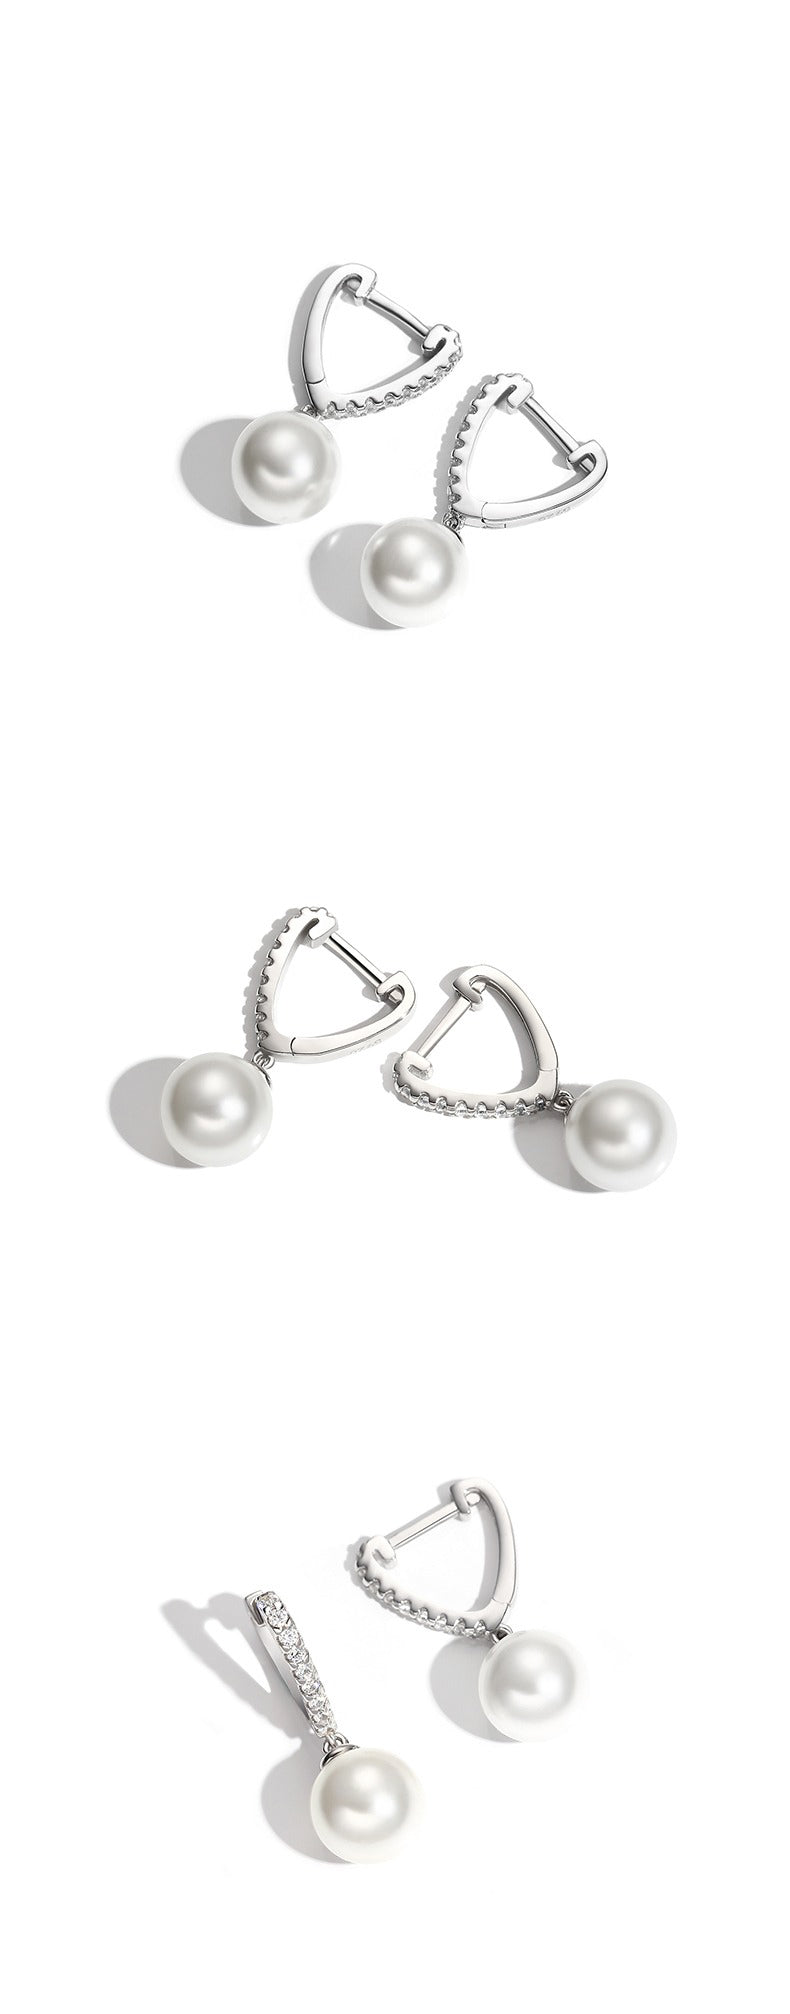 Triangolo - 925 Silver Pearl Earrings by Notteluna